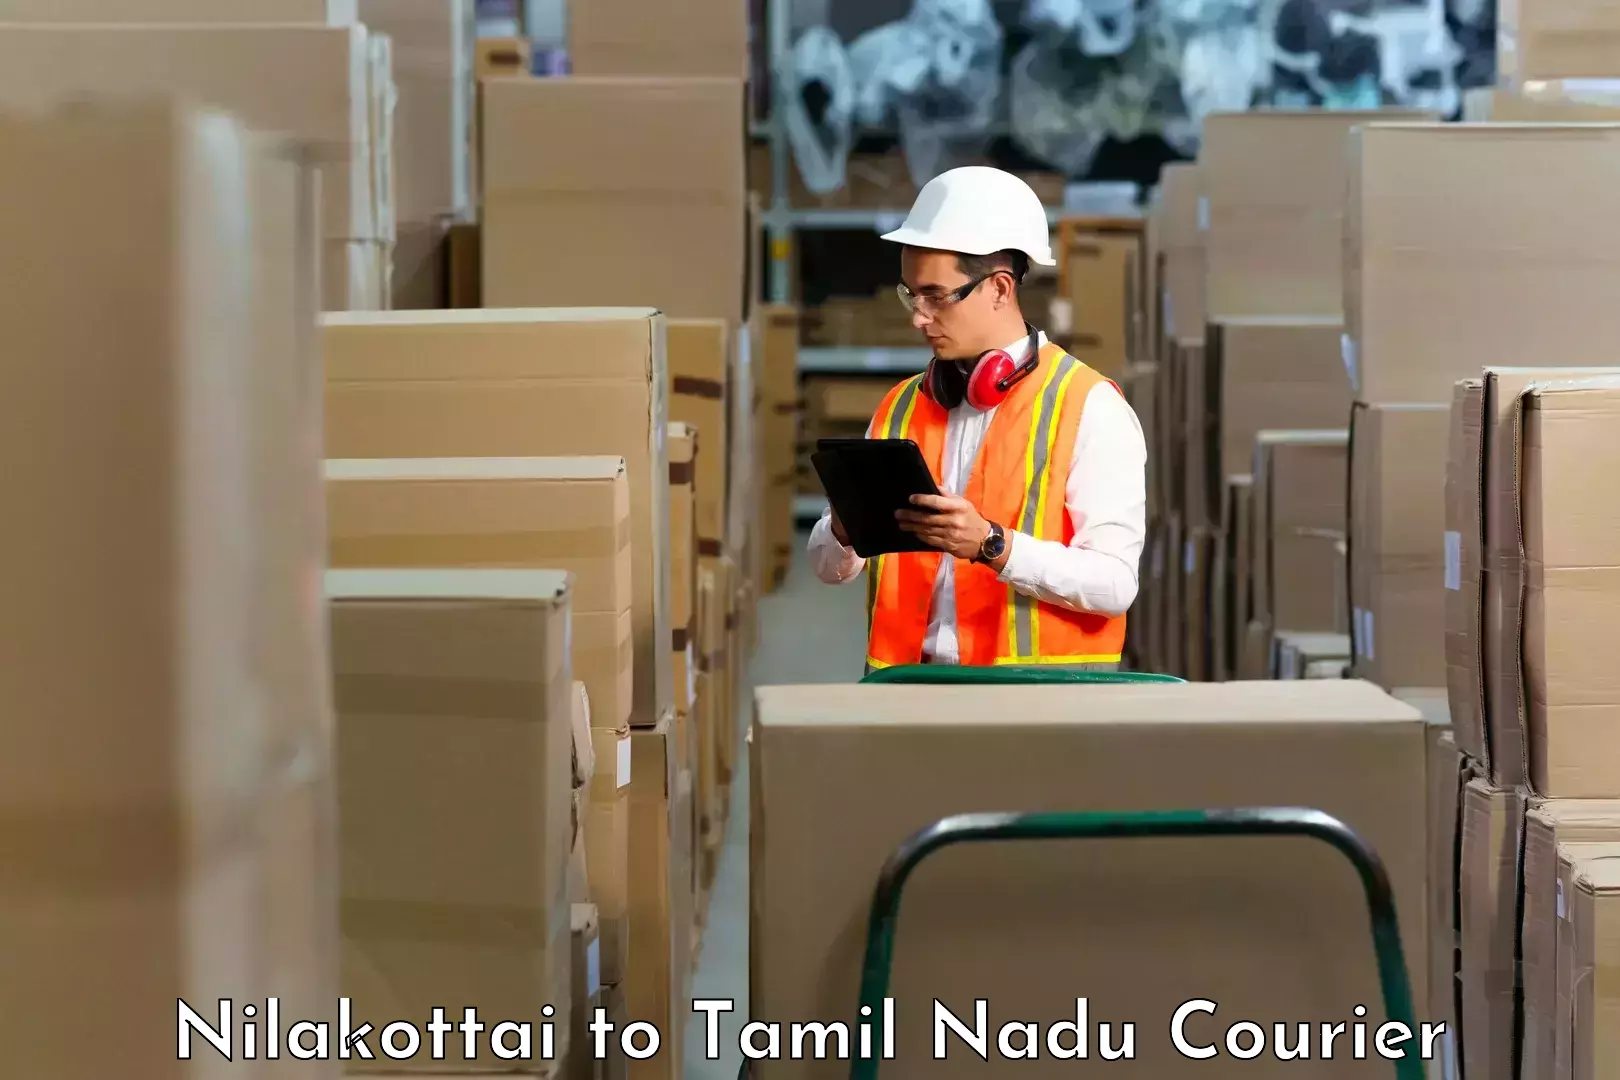 Custom courier packaging Nilakottai to Melmaruvathur